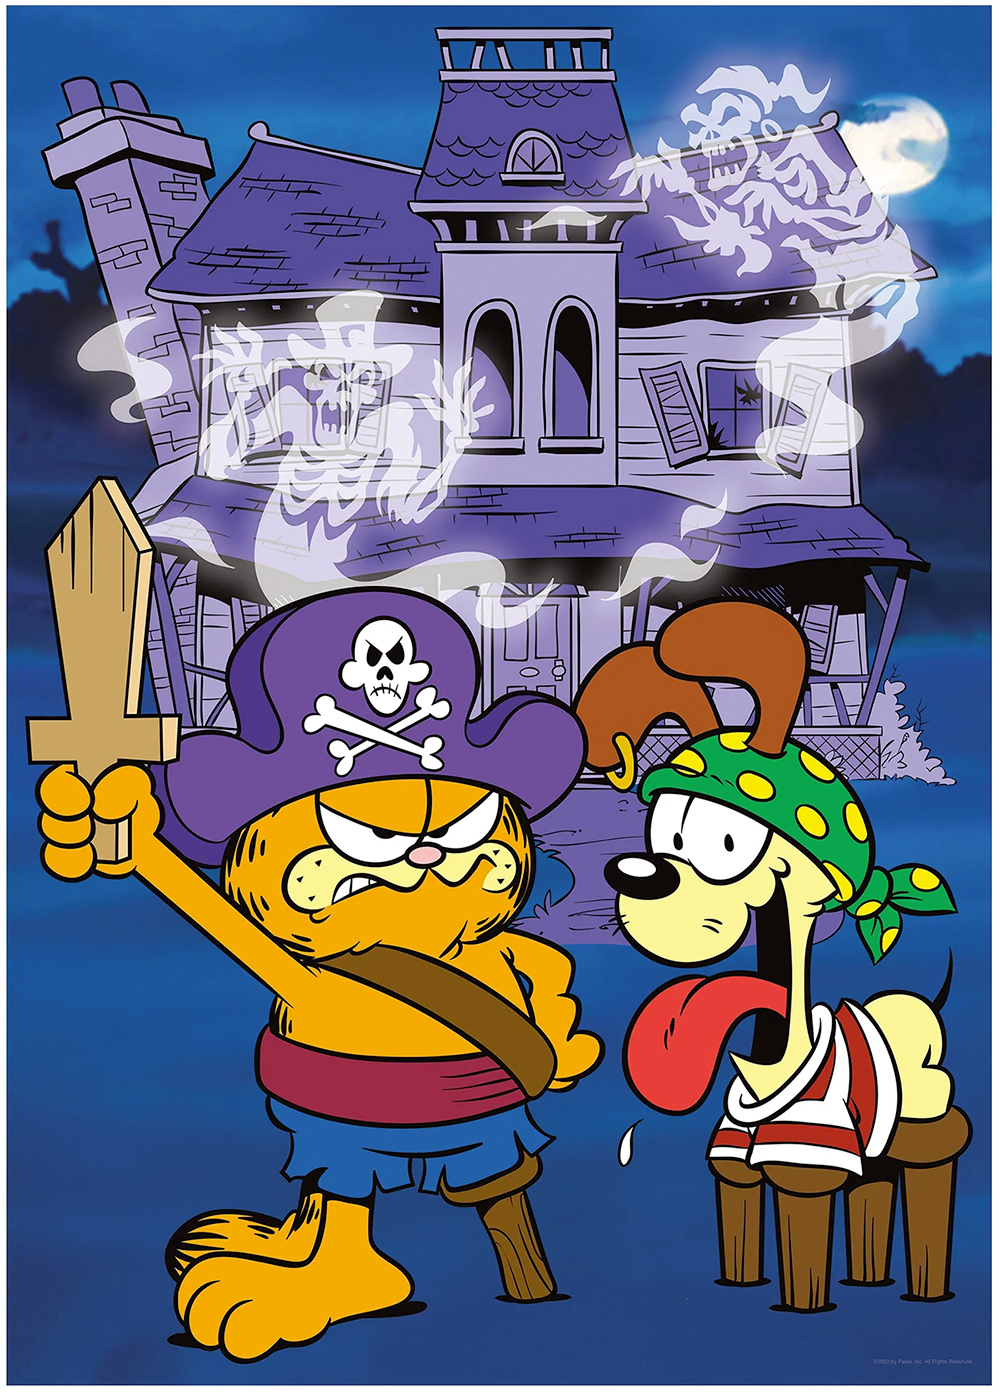 Quebra-Cabeça Garfield e Odie no Halloween com 1.000 peças